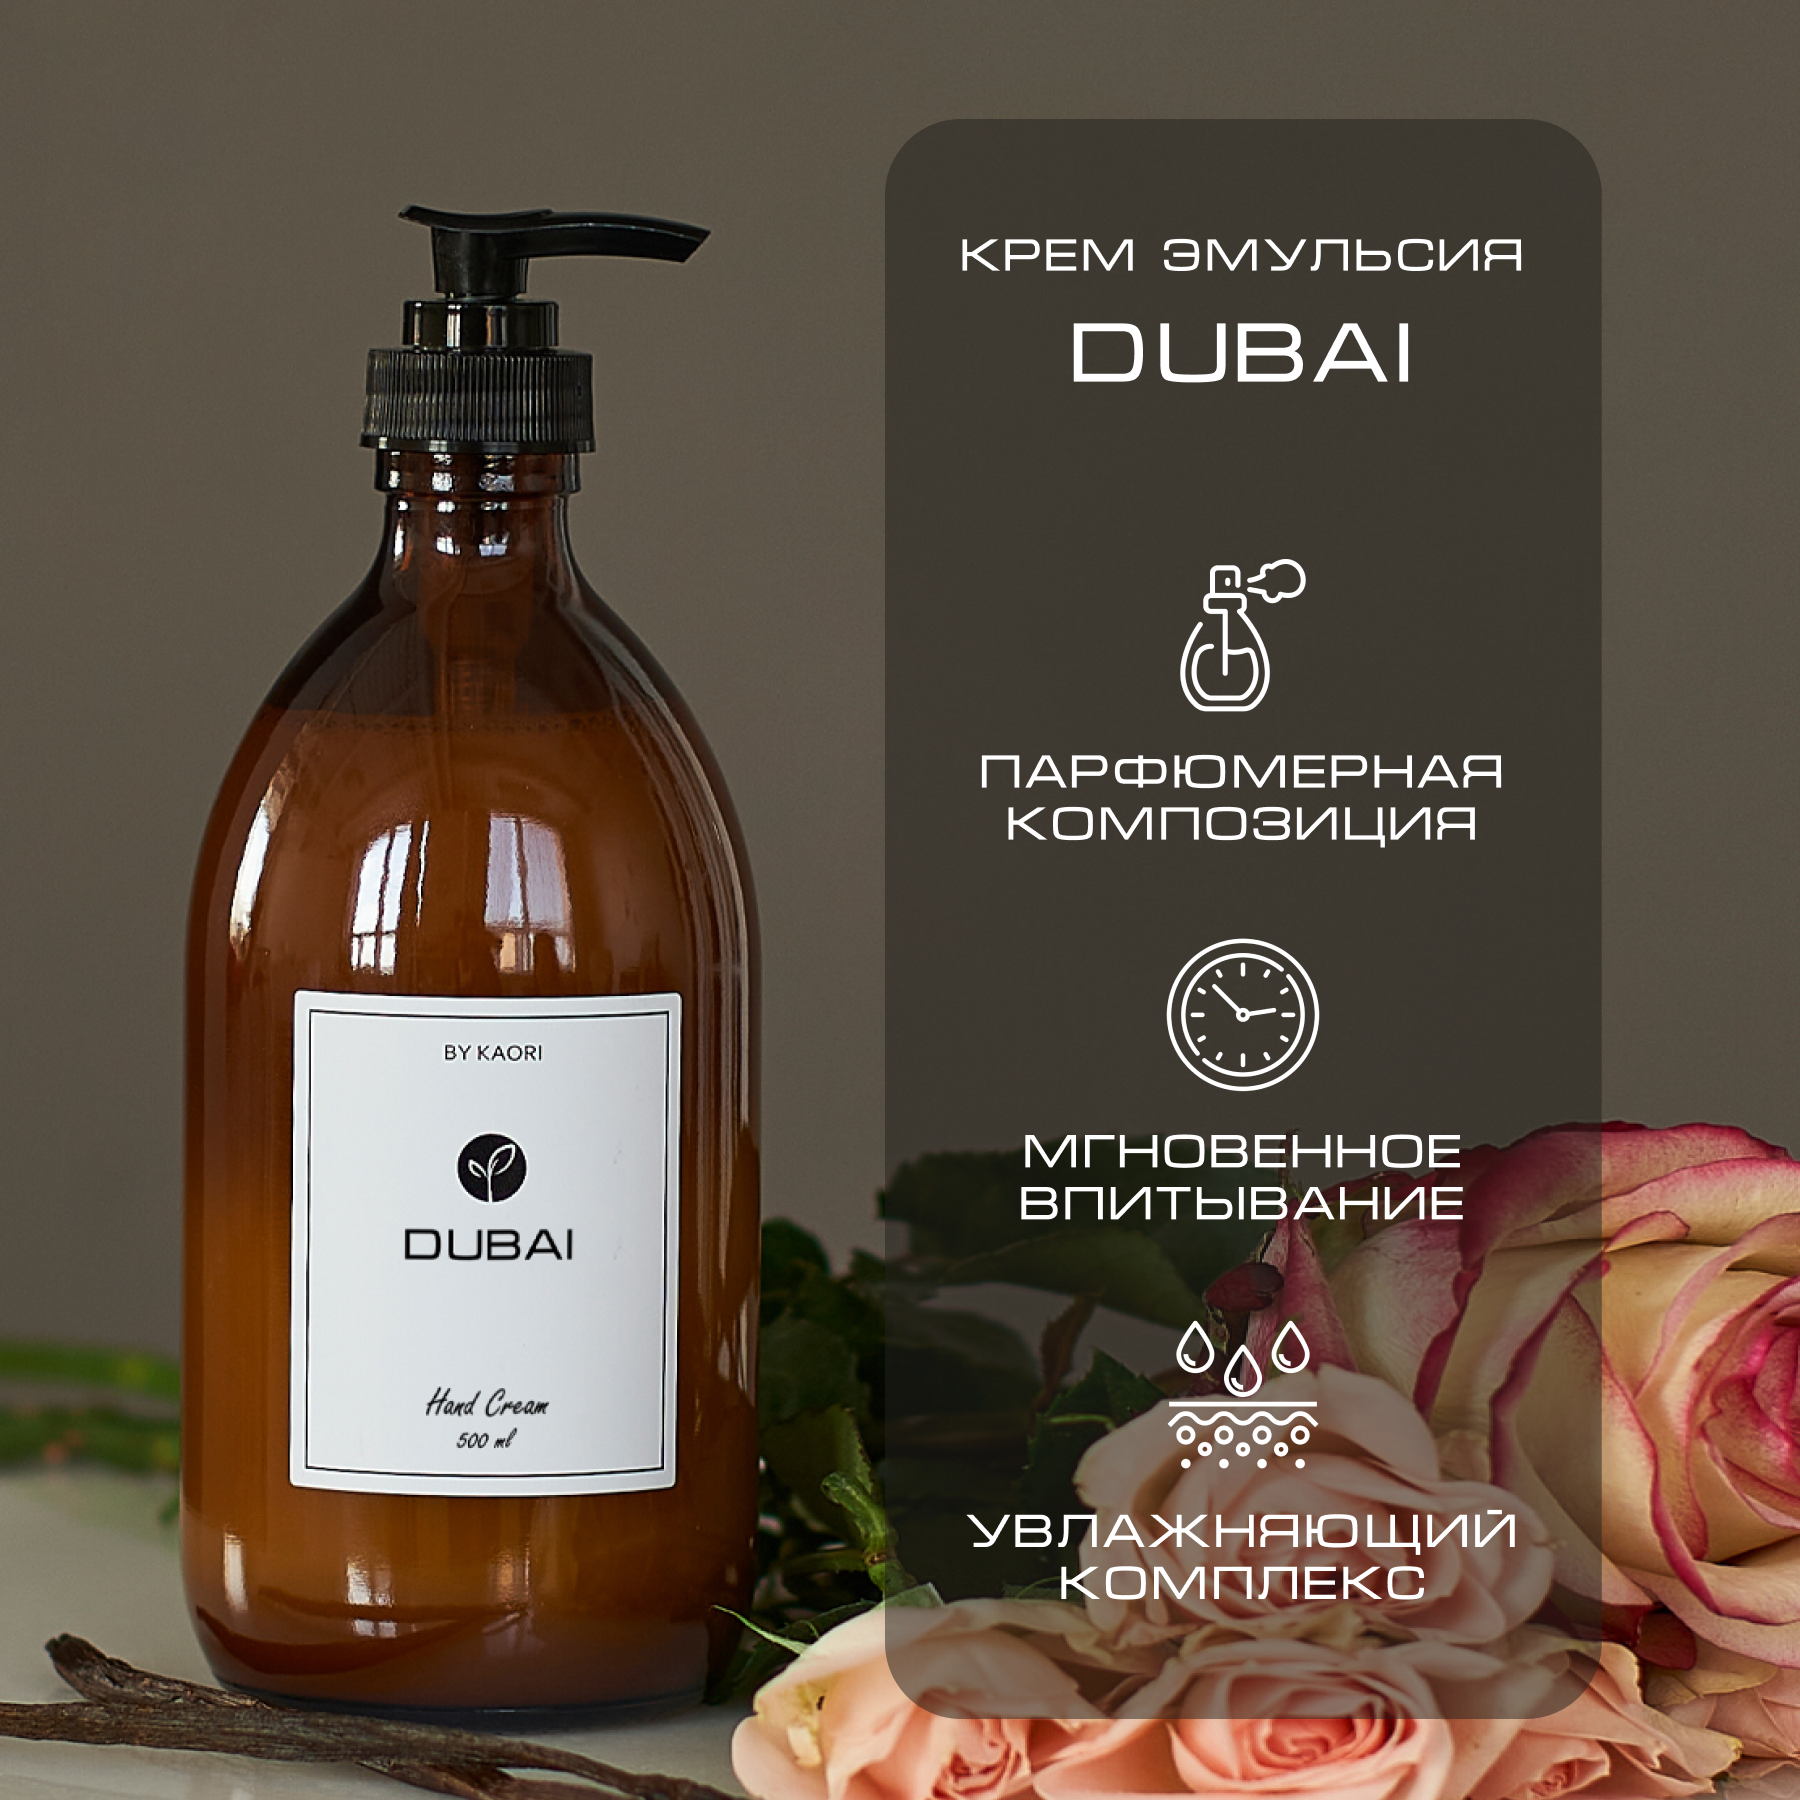 Крем эмульсия для рук By Kaori крем увлажняющий парфюмированный аромат Dubai 500 мл dubai platinum